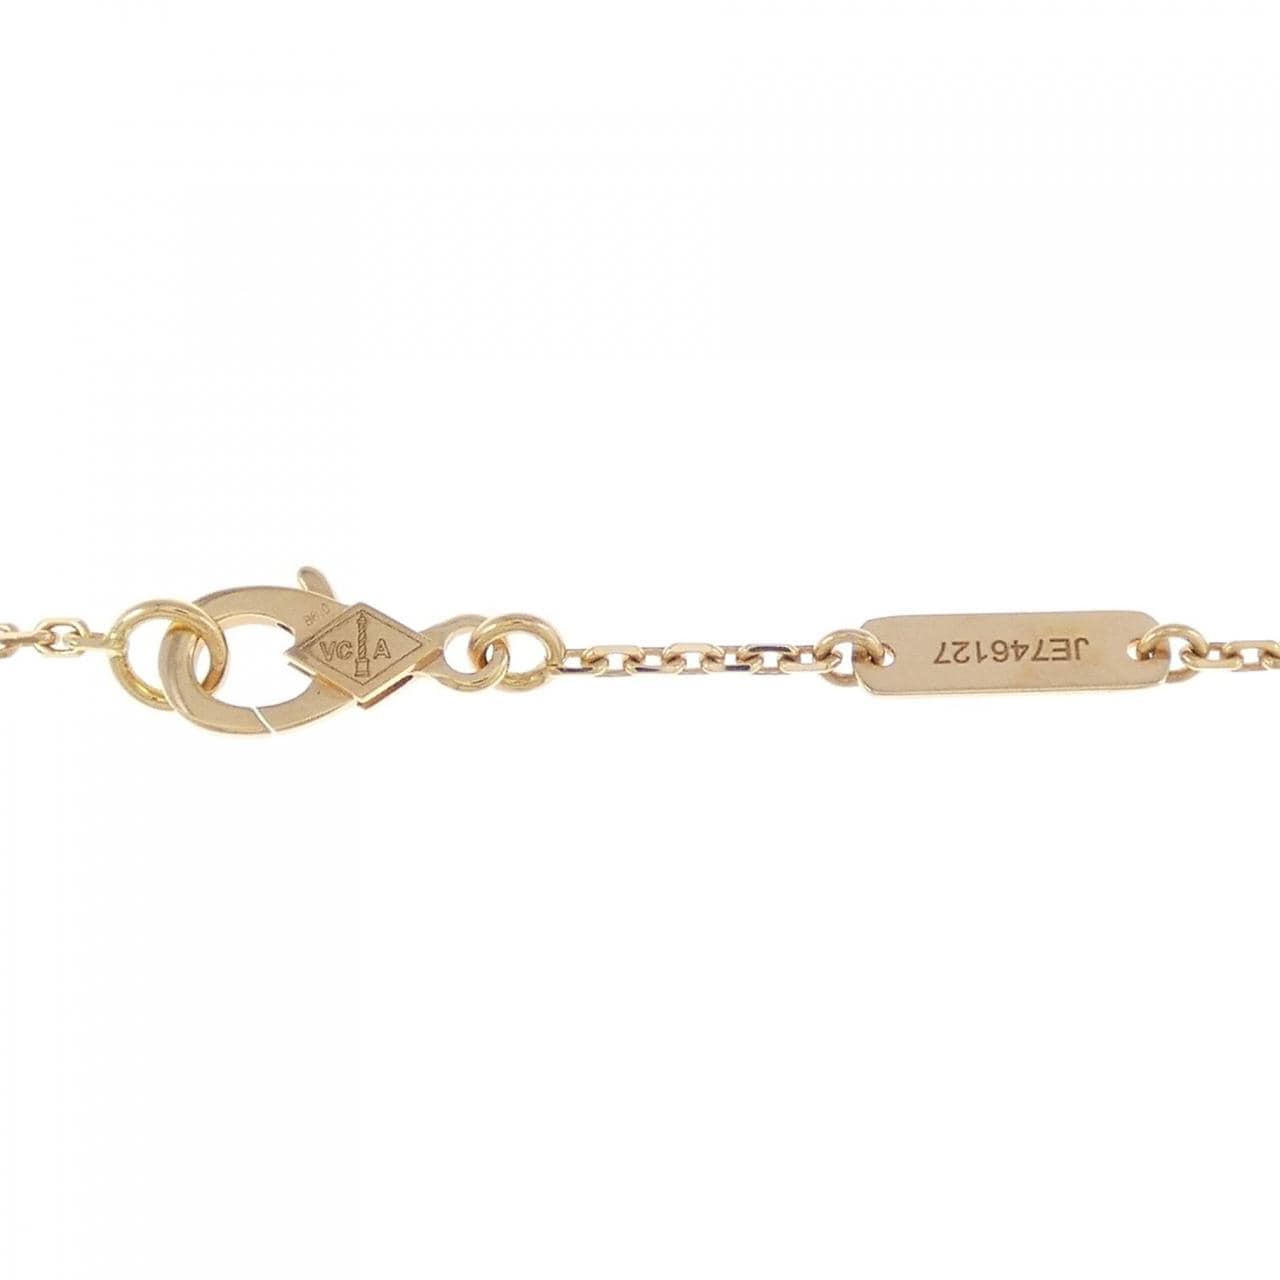 [BRAND NEW] Van Cleef & Arpels Perle Necklace